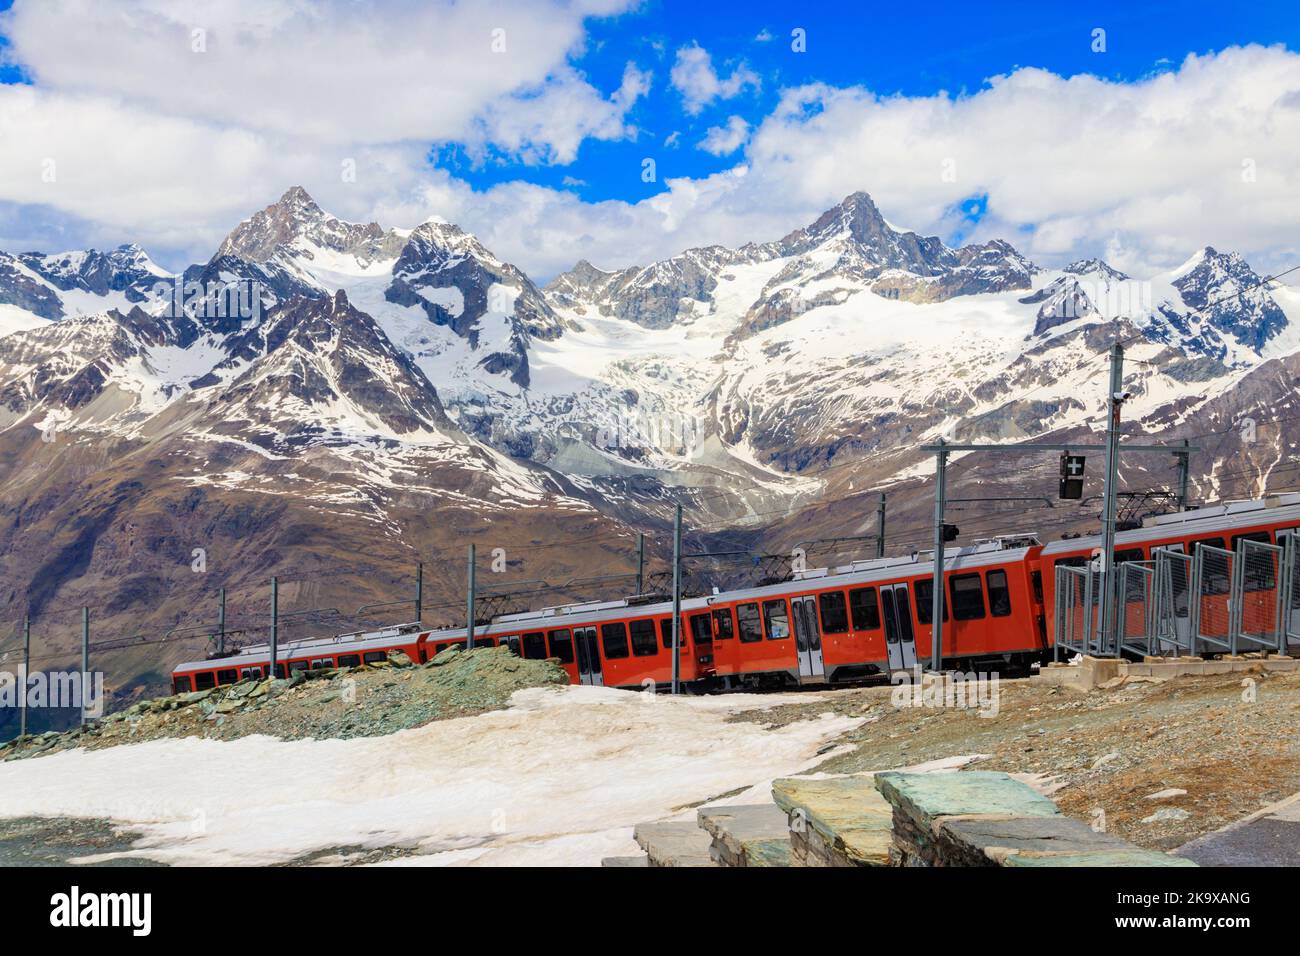 Splendida vista sulle Alpi svizzere con treno a cremagliera della ferrovia Gornergrat vicino a Zermatt, Svizzera Foto Stock